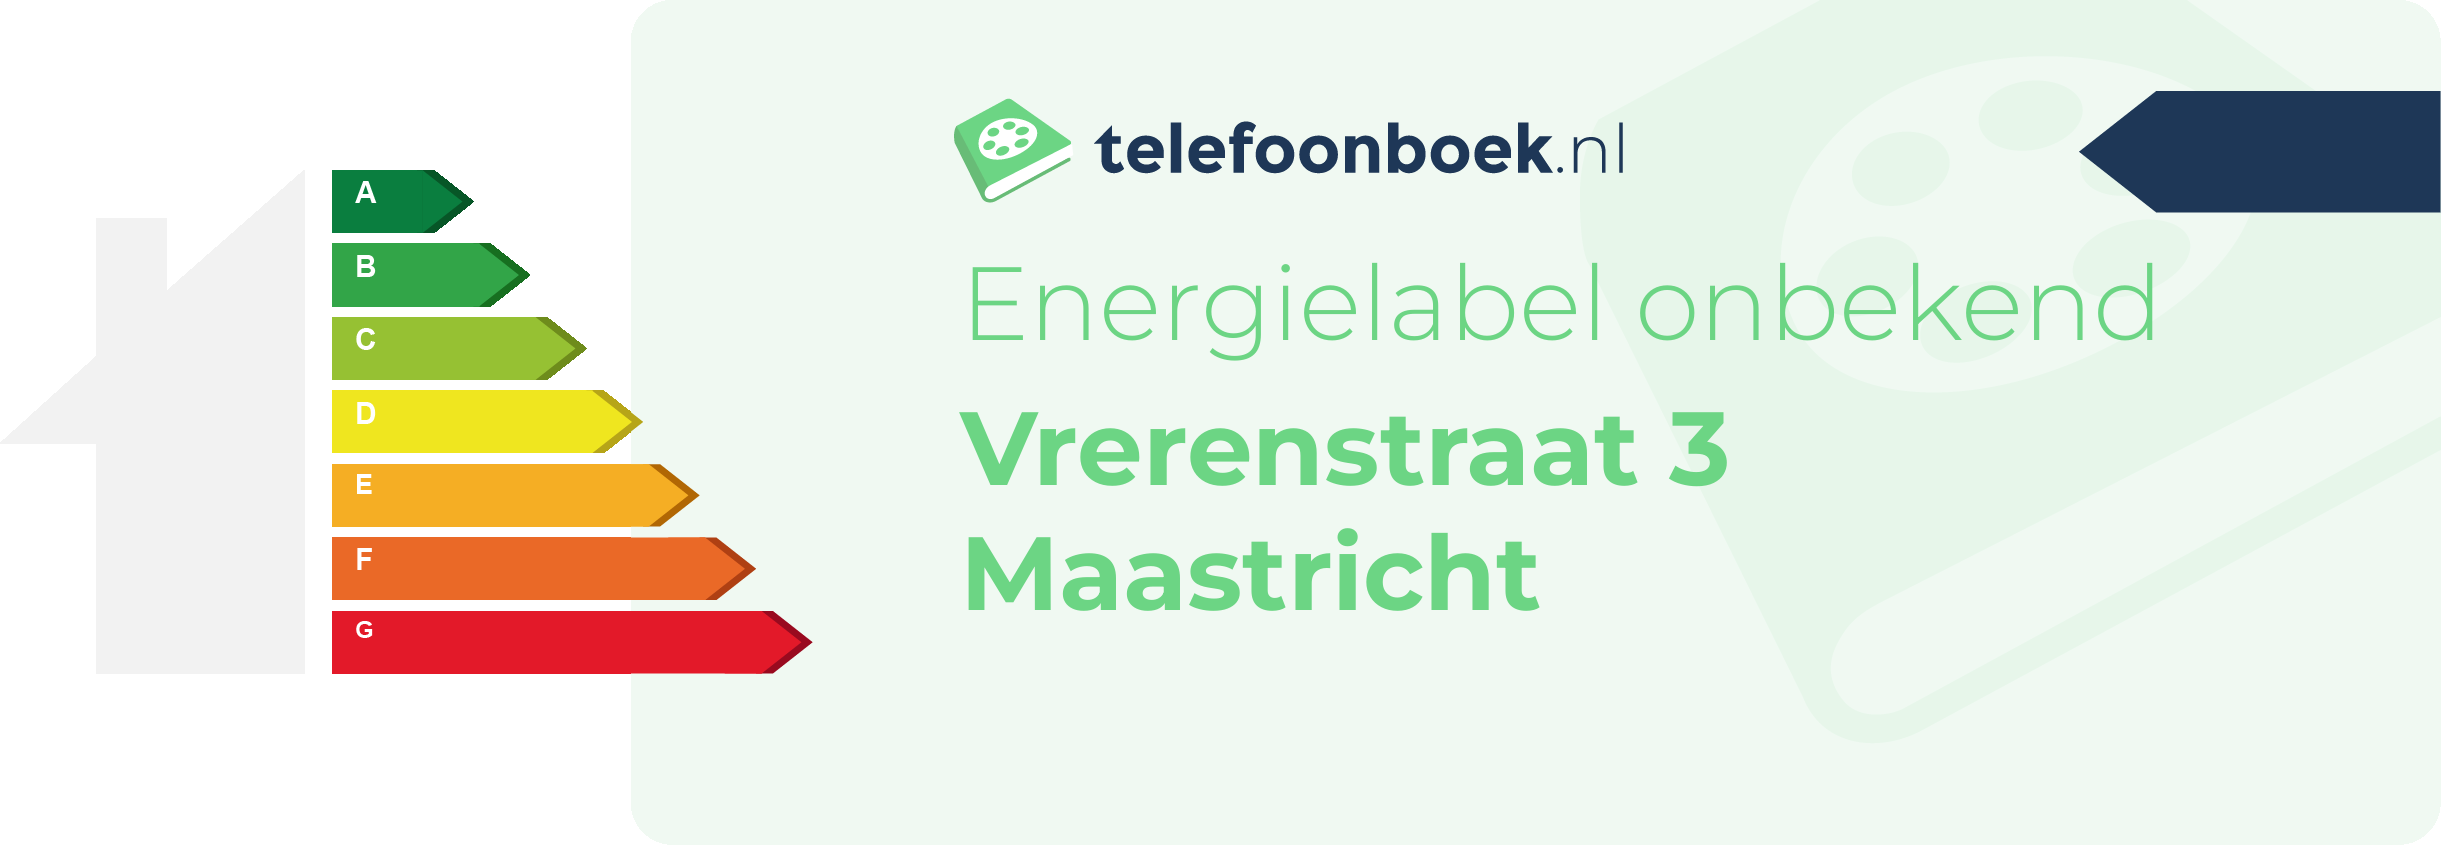 Energielabel Vrerenstraat 3 Maastricht